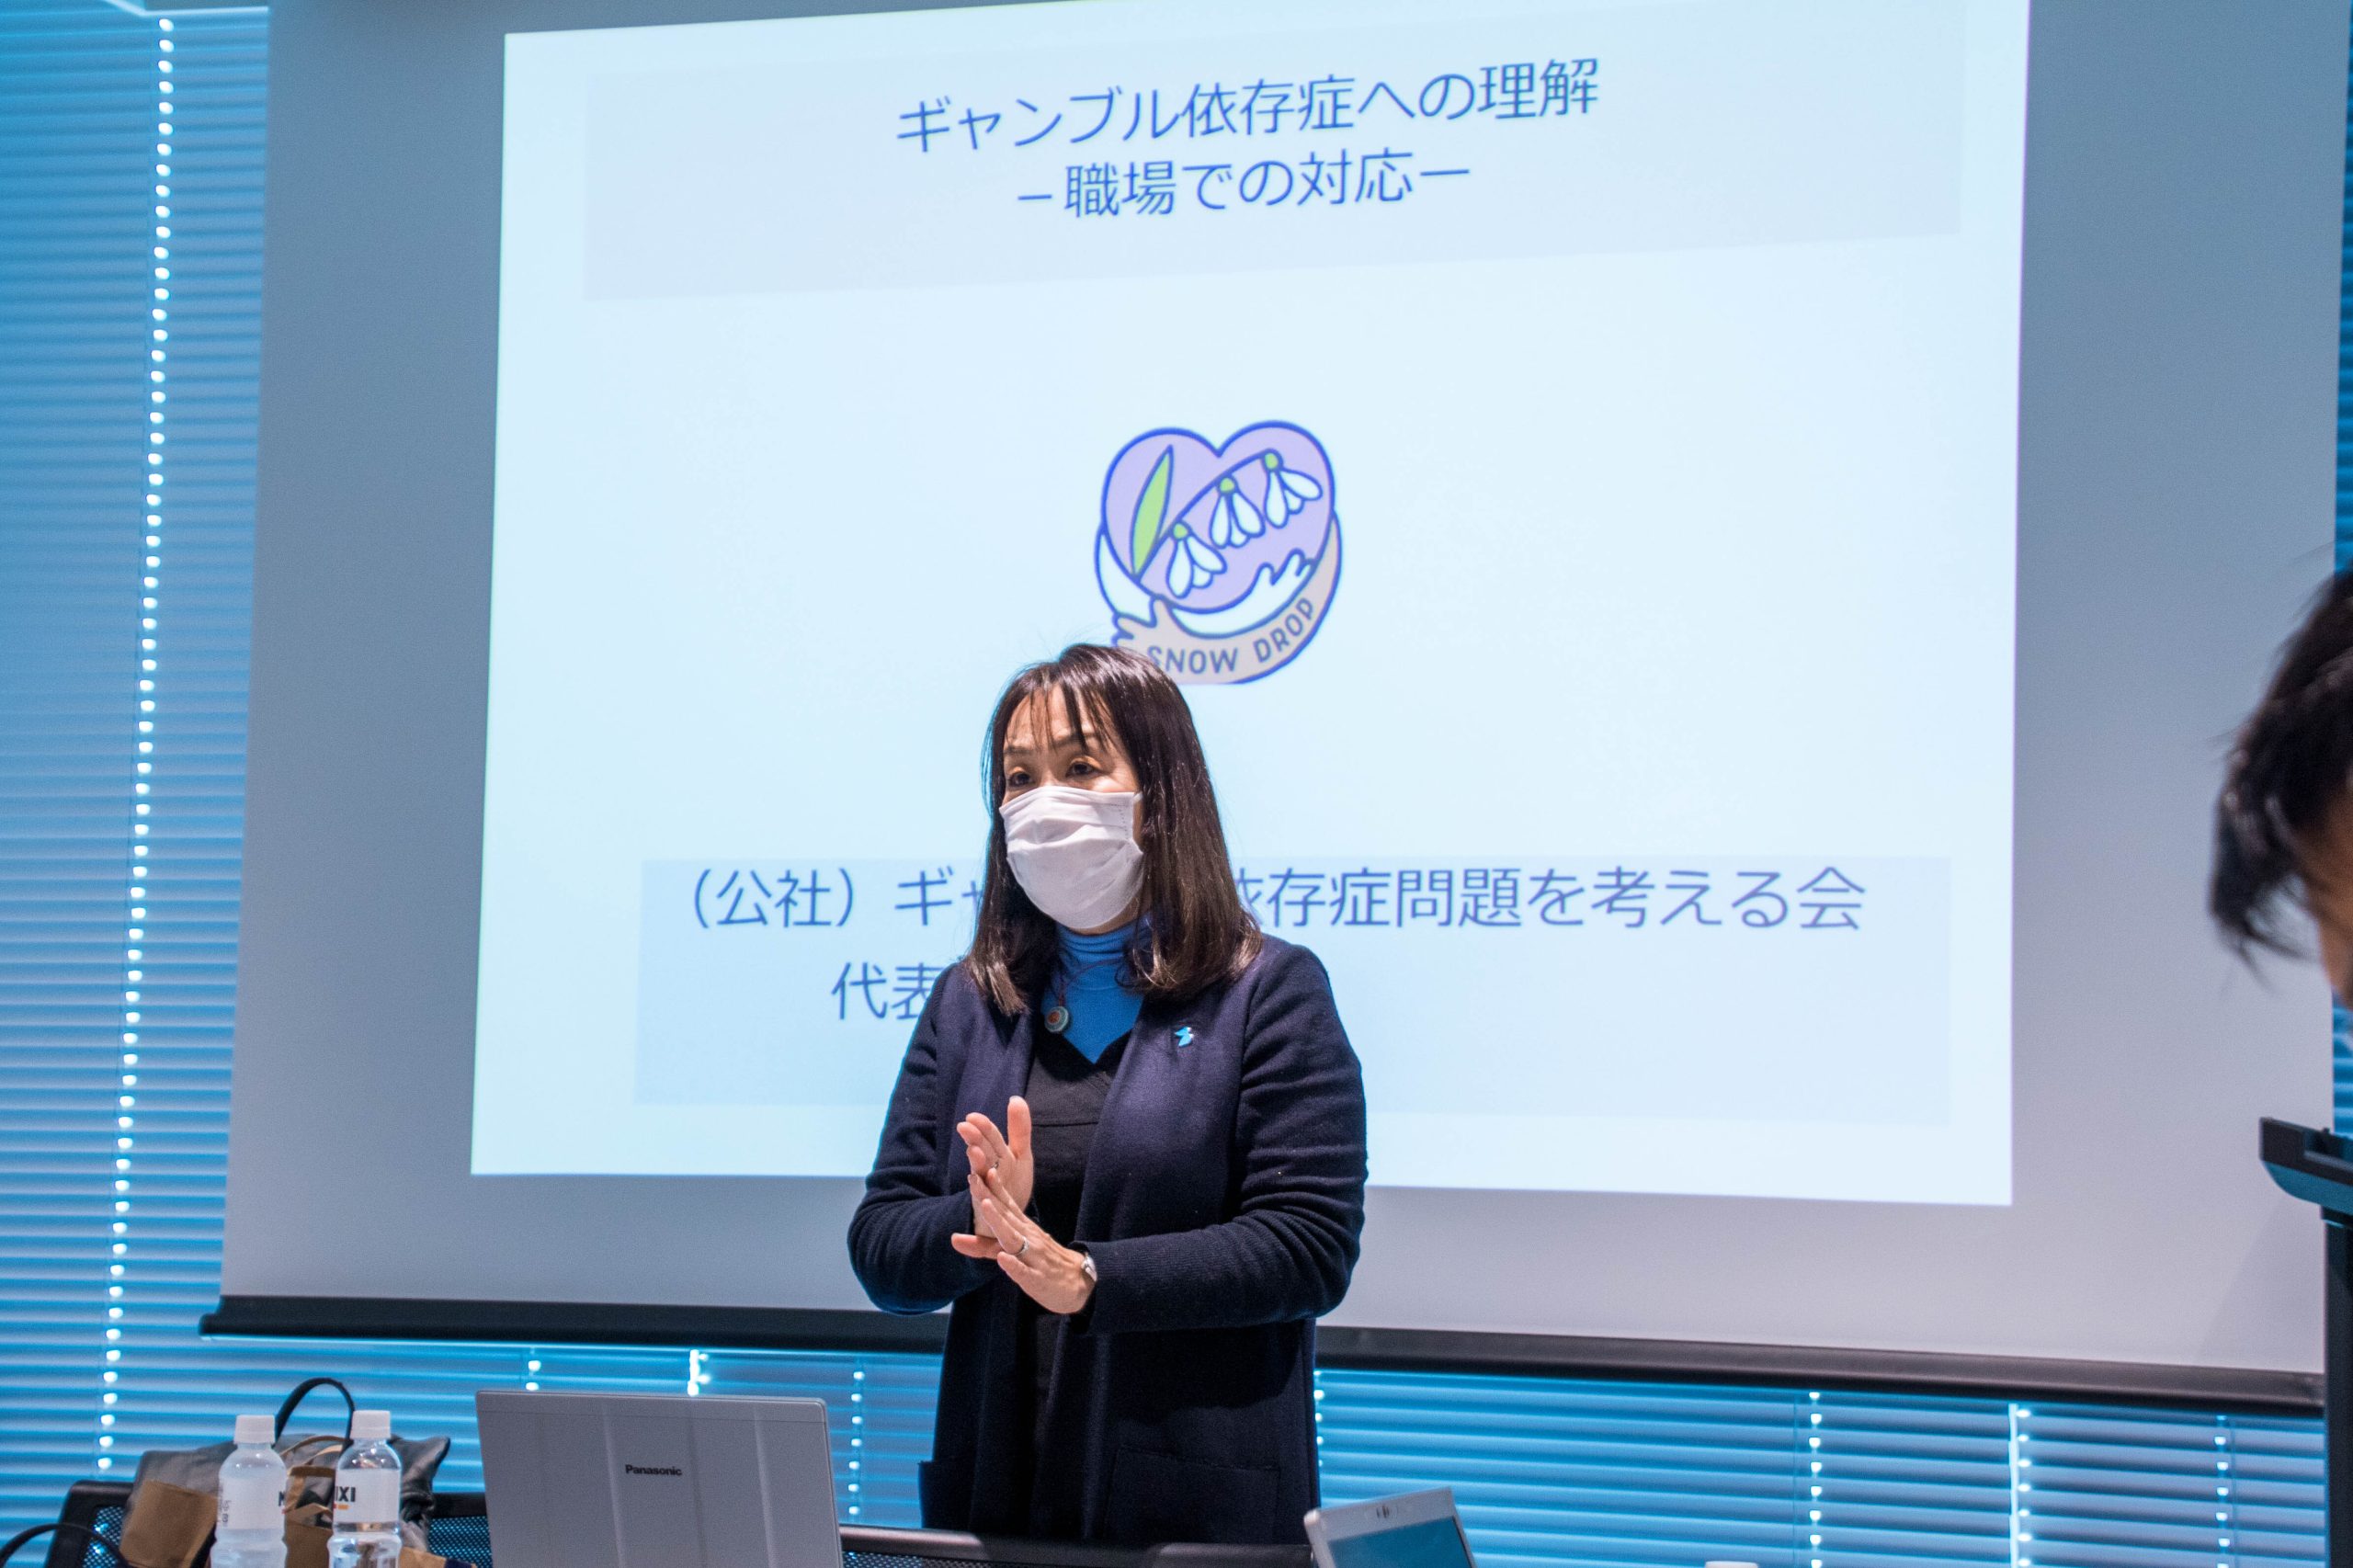 「公益社団法人 ギャンブル依存症問題を考える会」の代表・田中紀子さん